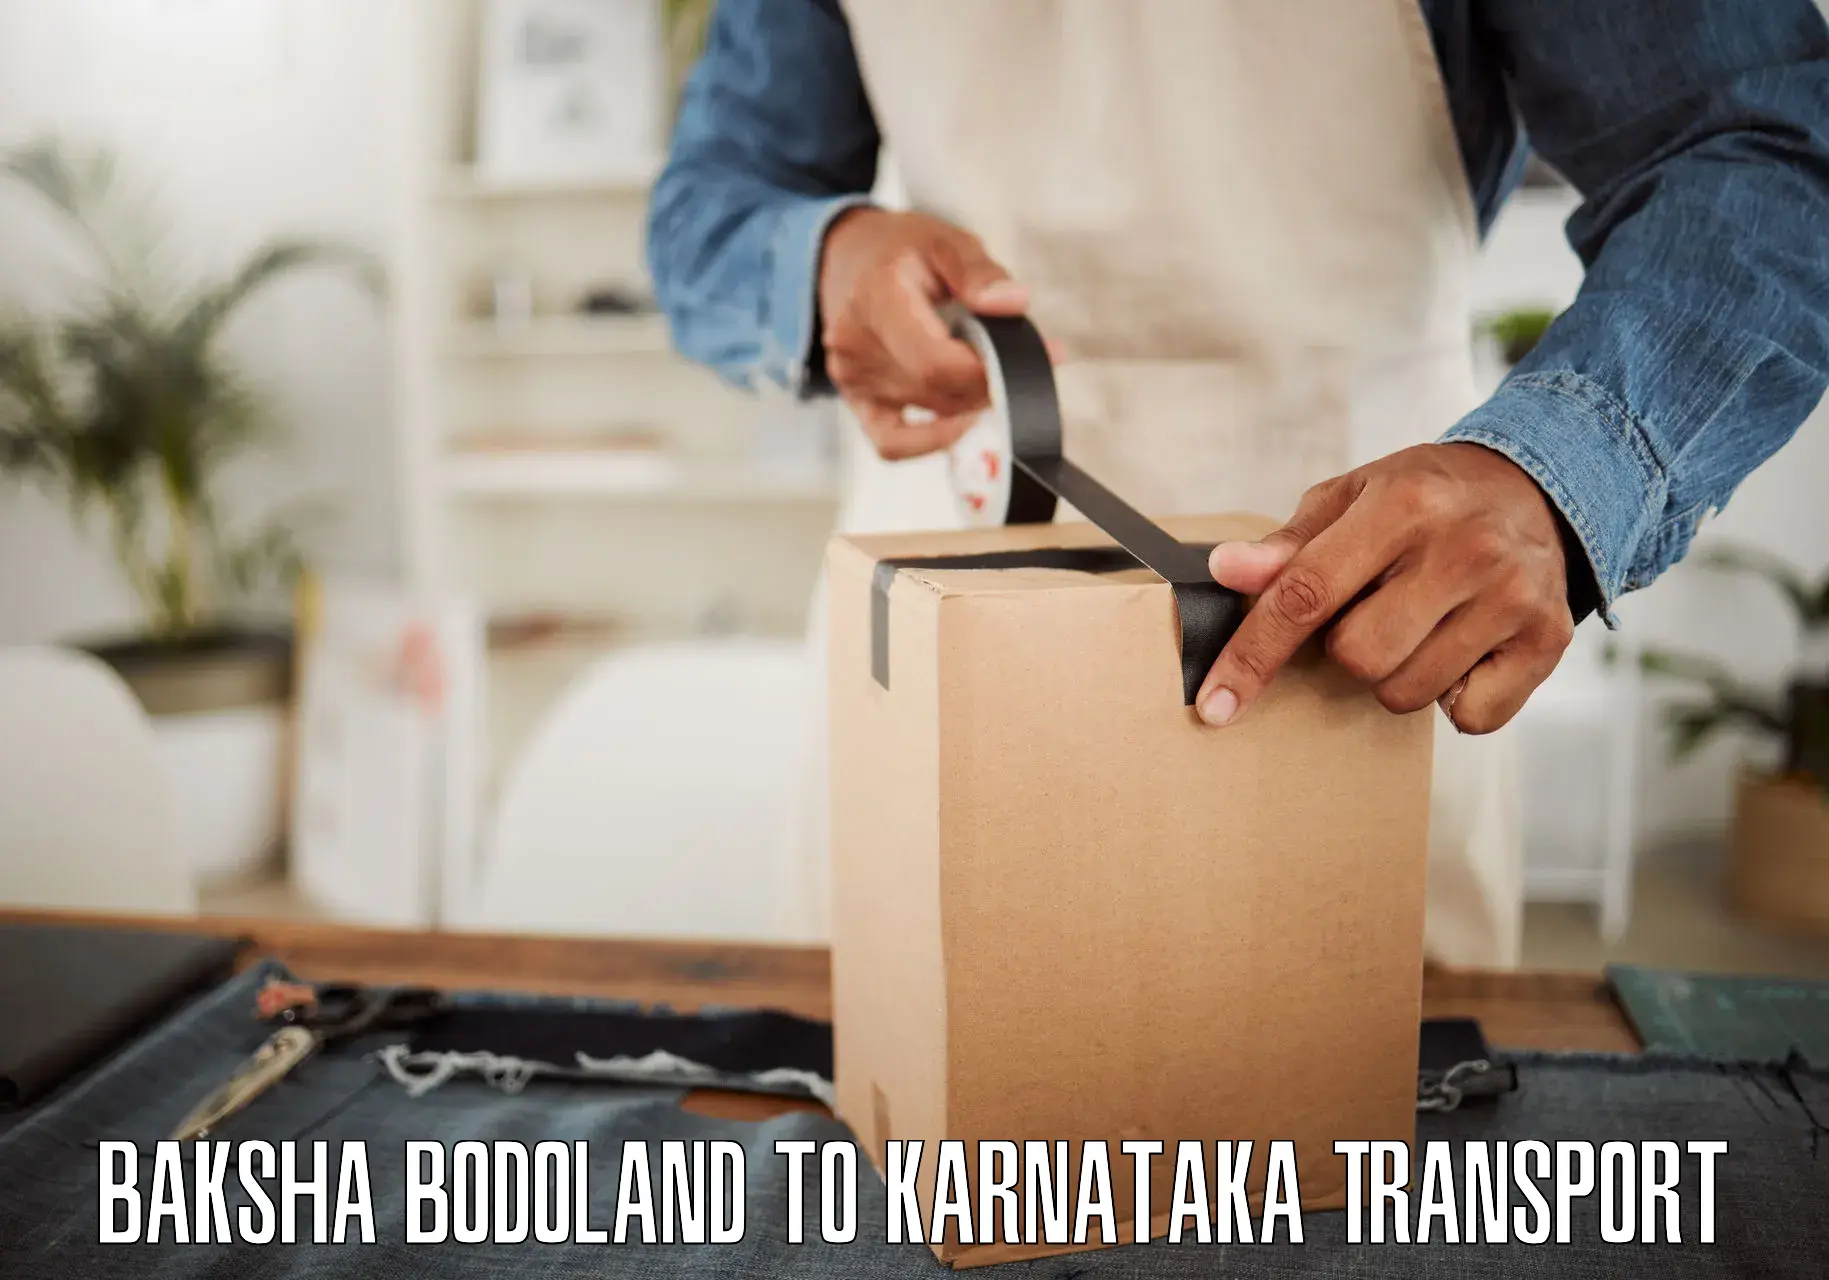 Road transport online services Baksha Bodoland to Bengaluru